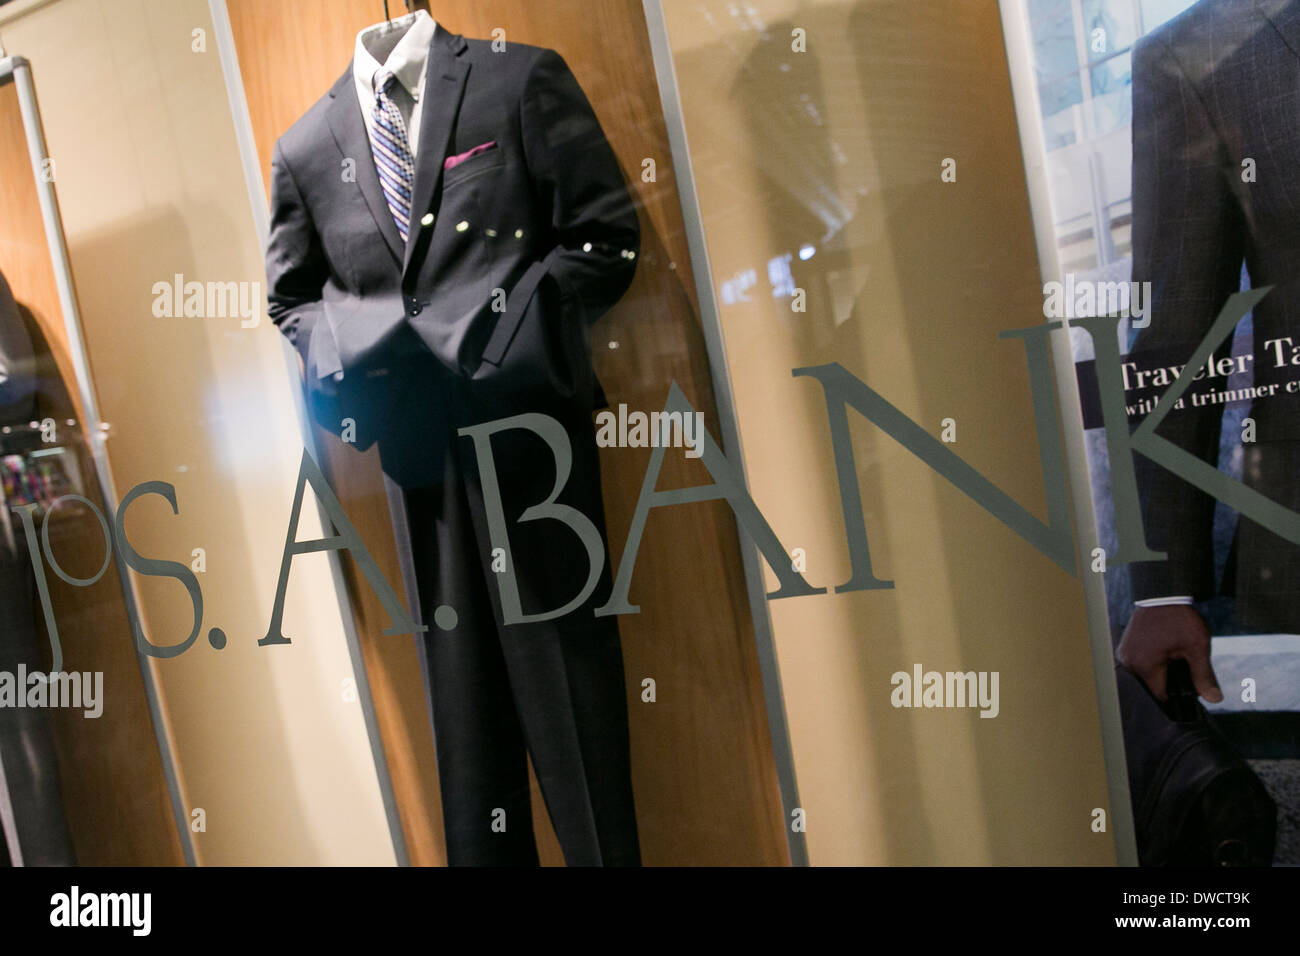 Viene visualizzata la finestra a Jos. A. Indumenti banca retail store in Washington, DC. Foto Stock